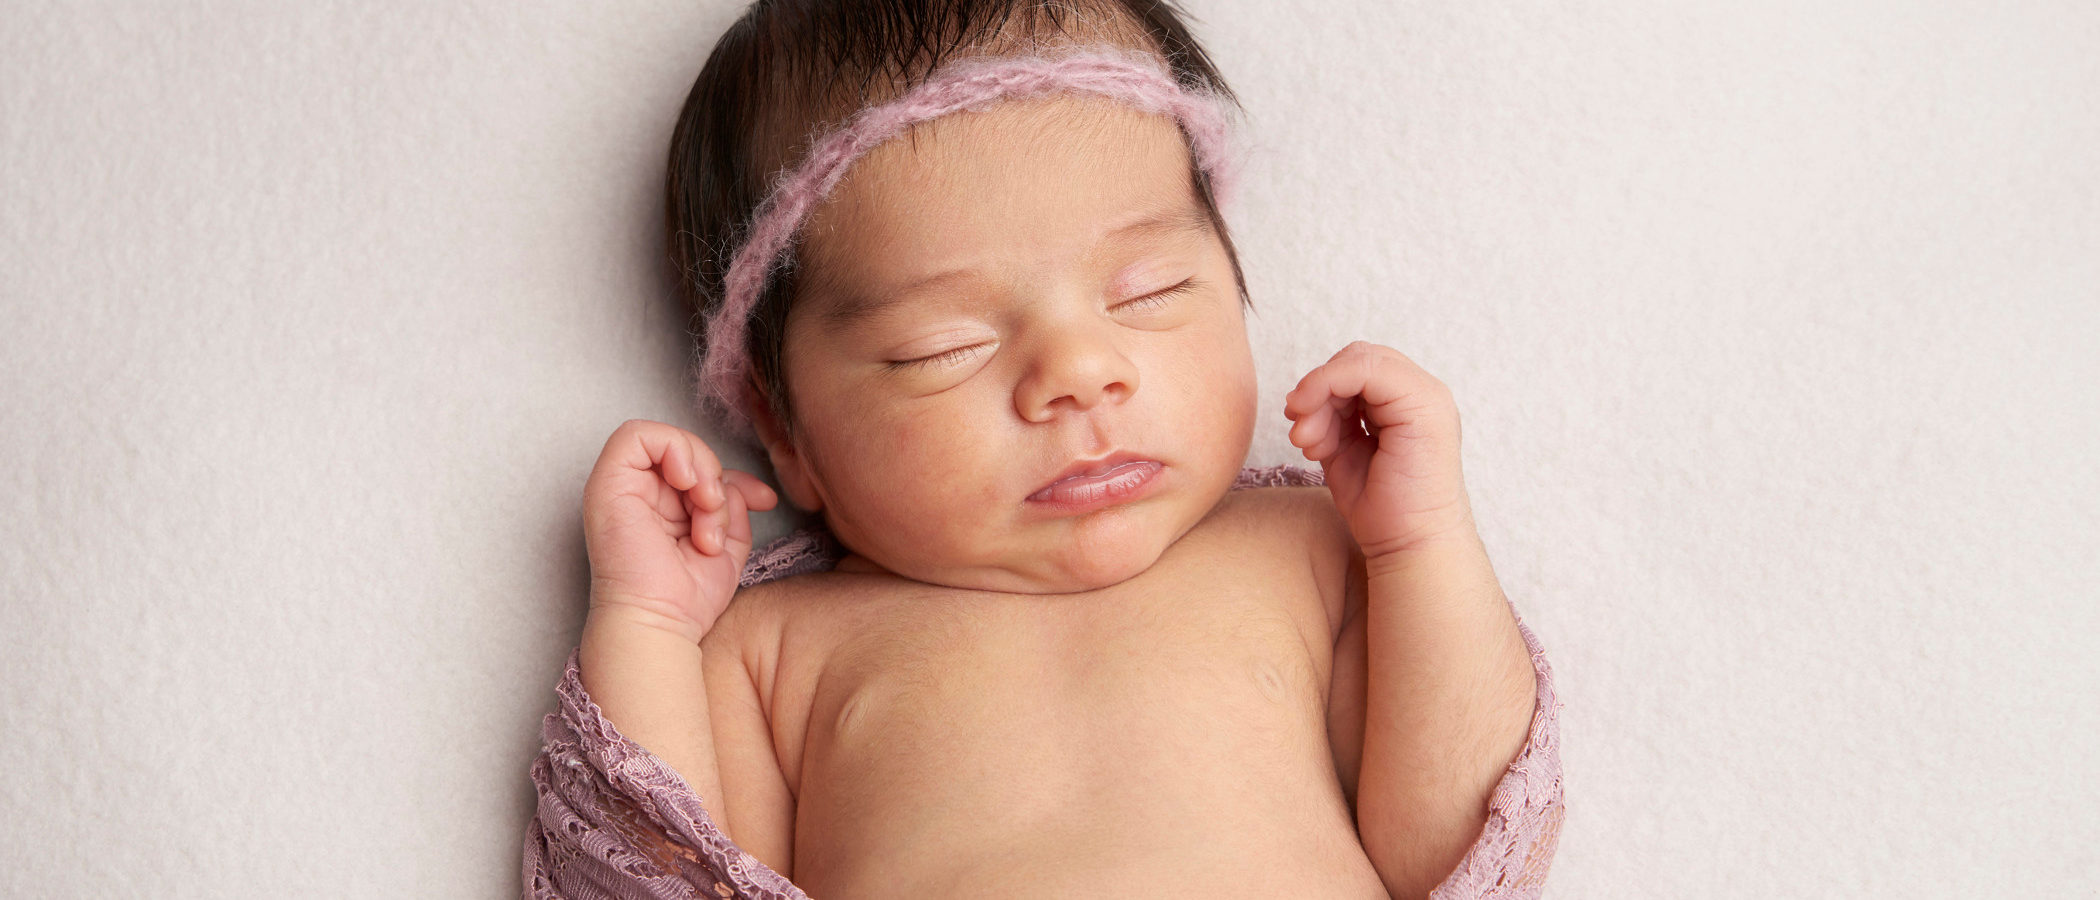 Bebés reborn, ¿qué son y por qué parecen de verdad?